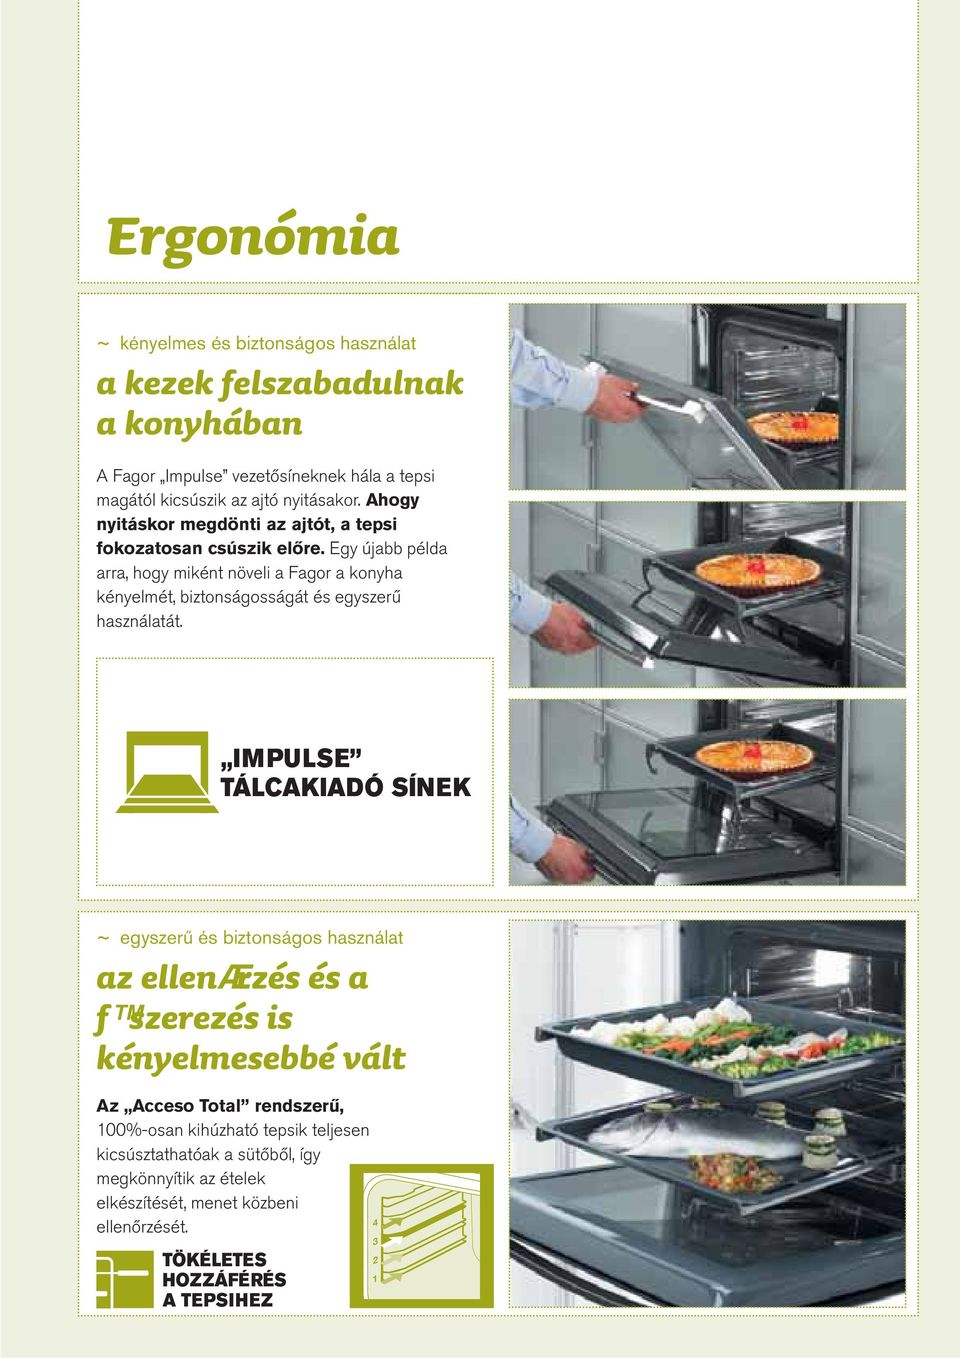 Egy újabb példa arra, hogy miként növeli a Fagor a konyha kényelmét, biztonságosságát és egyszerű használatát.